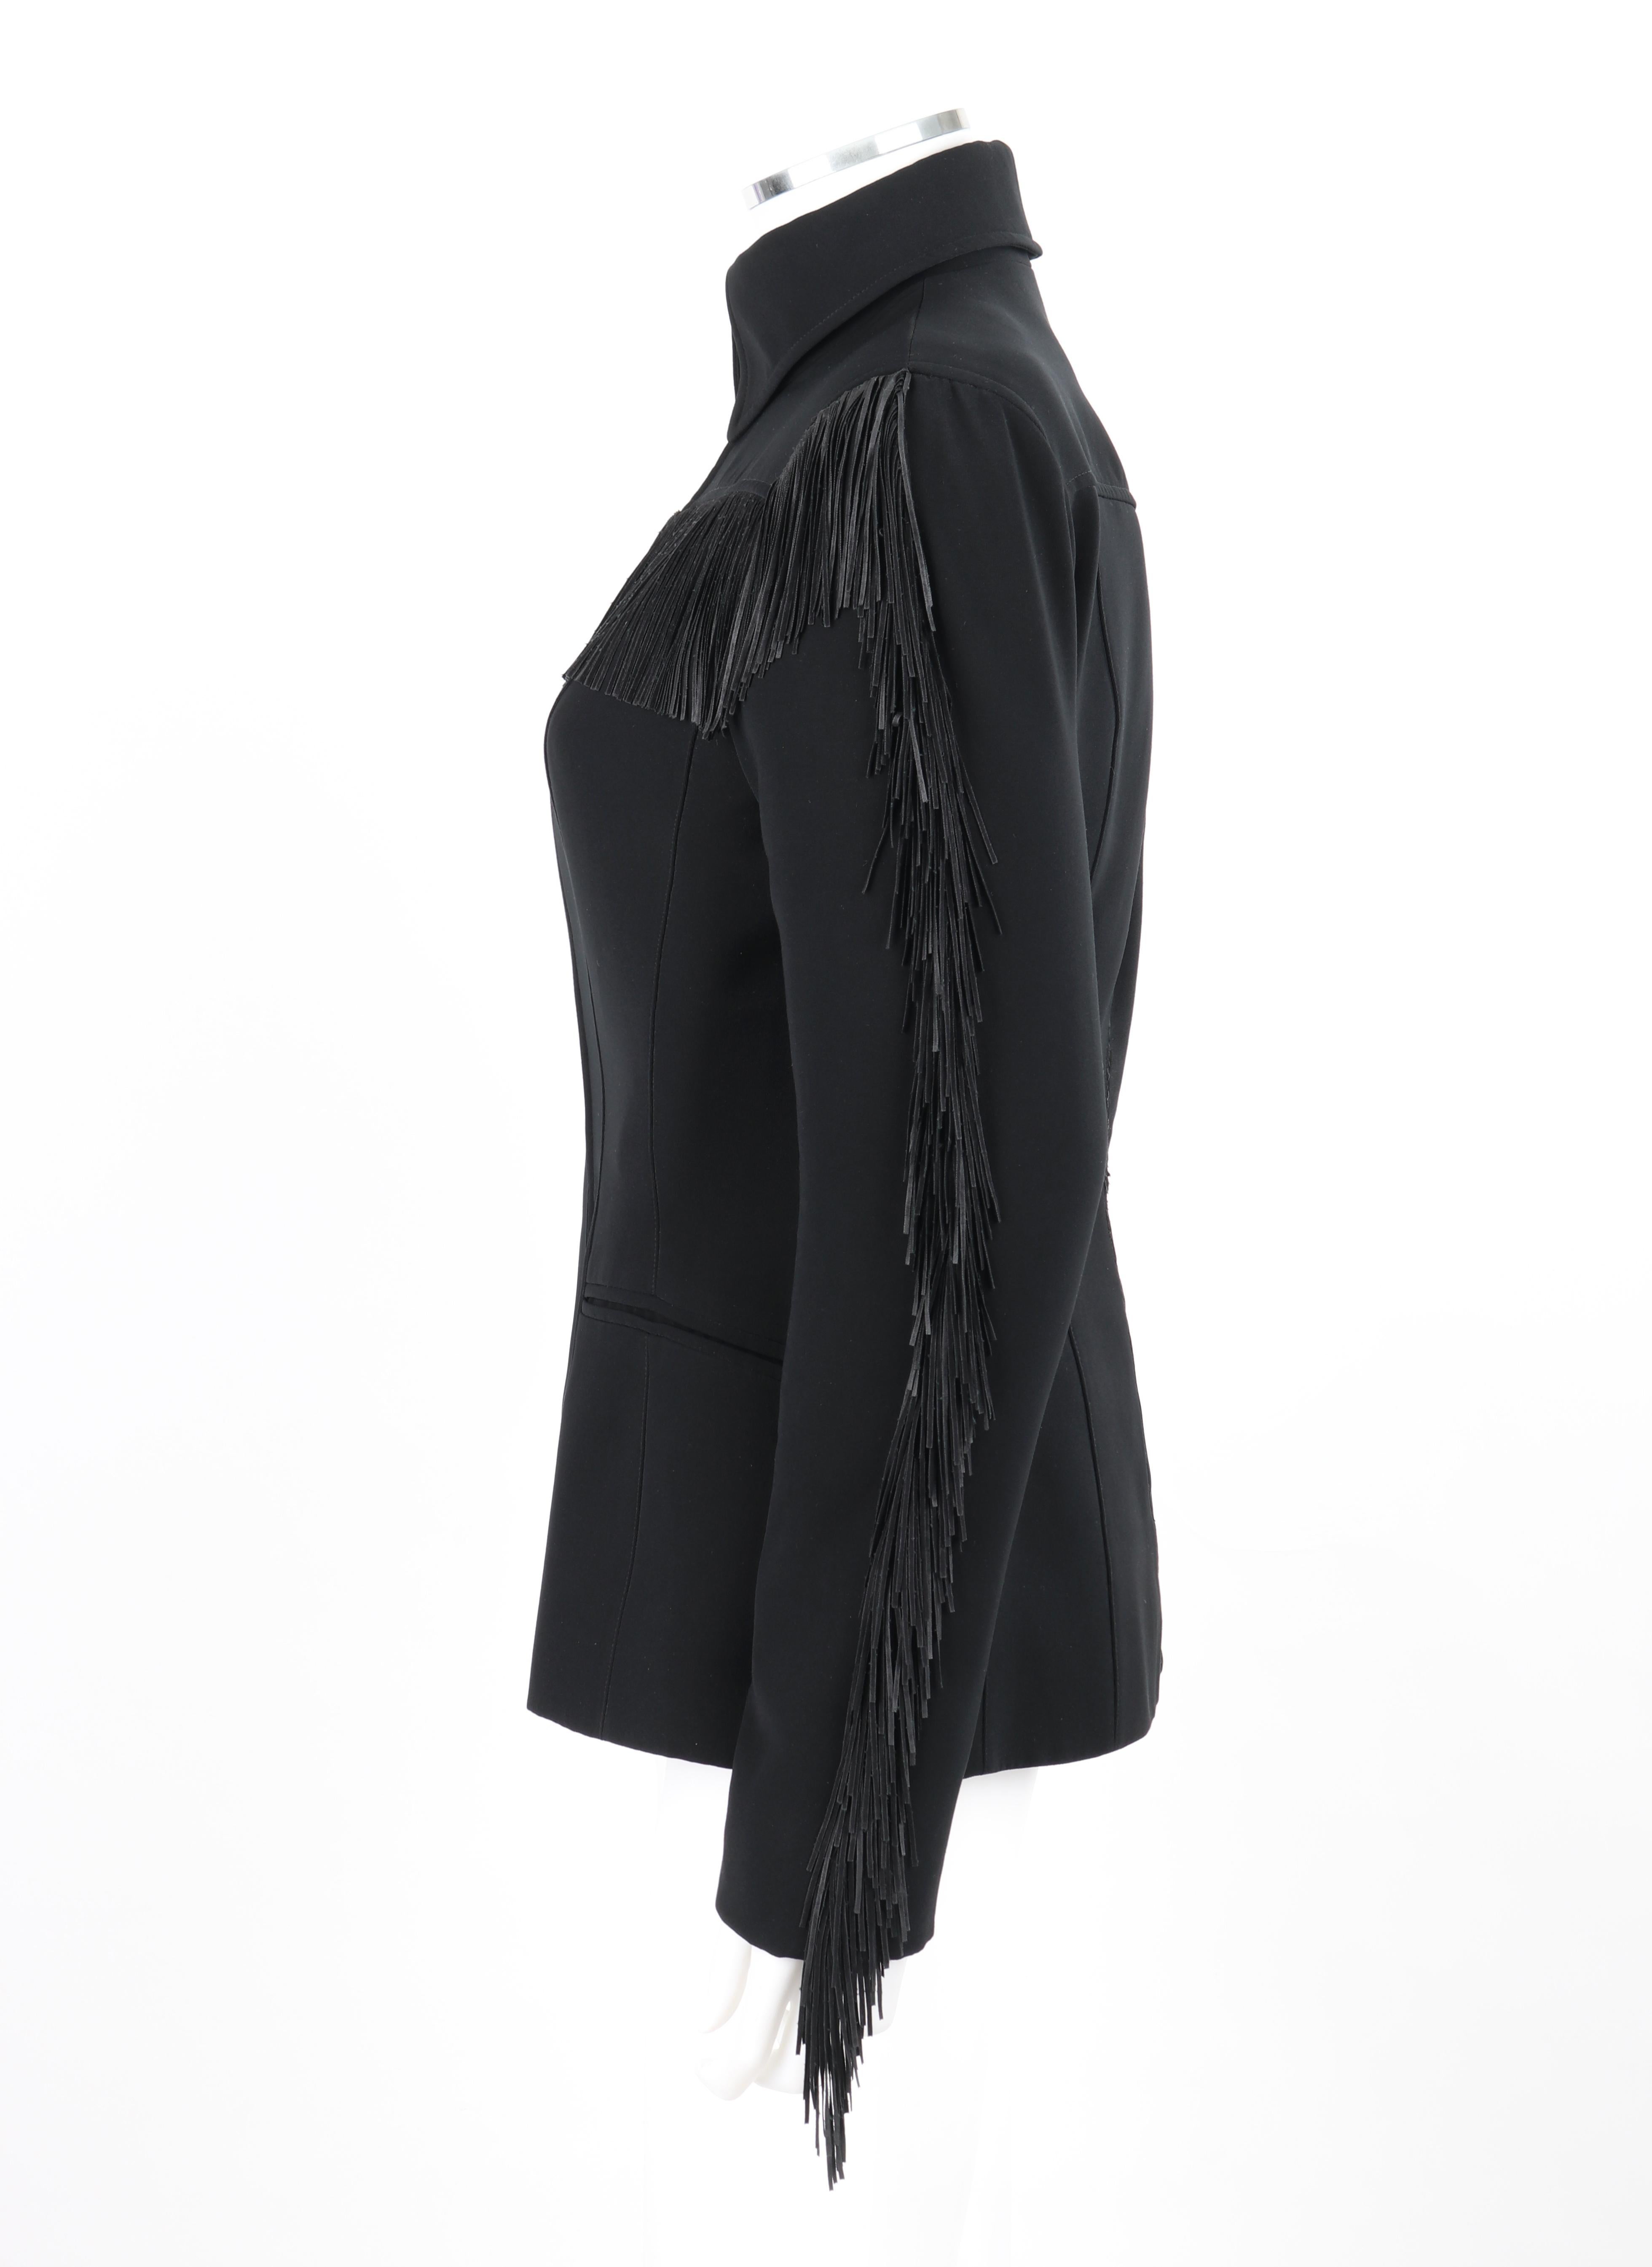 THIERRY MUGLER c.1990's Vtg Black Fringe High Collar Structured Zip Up Jacket  For Sale 2